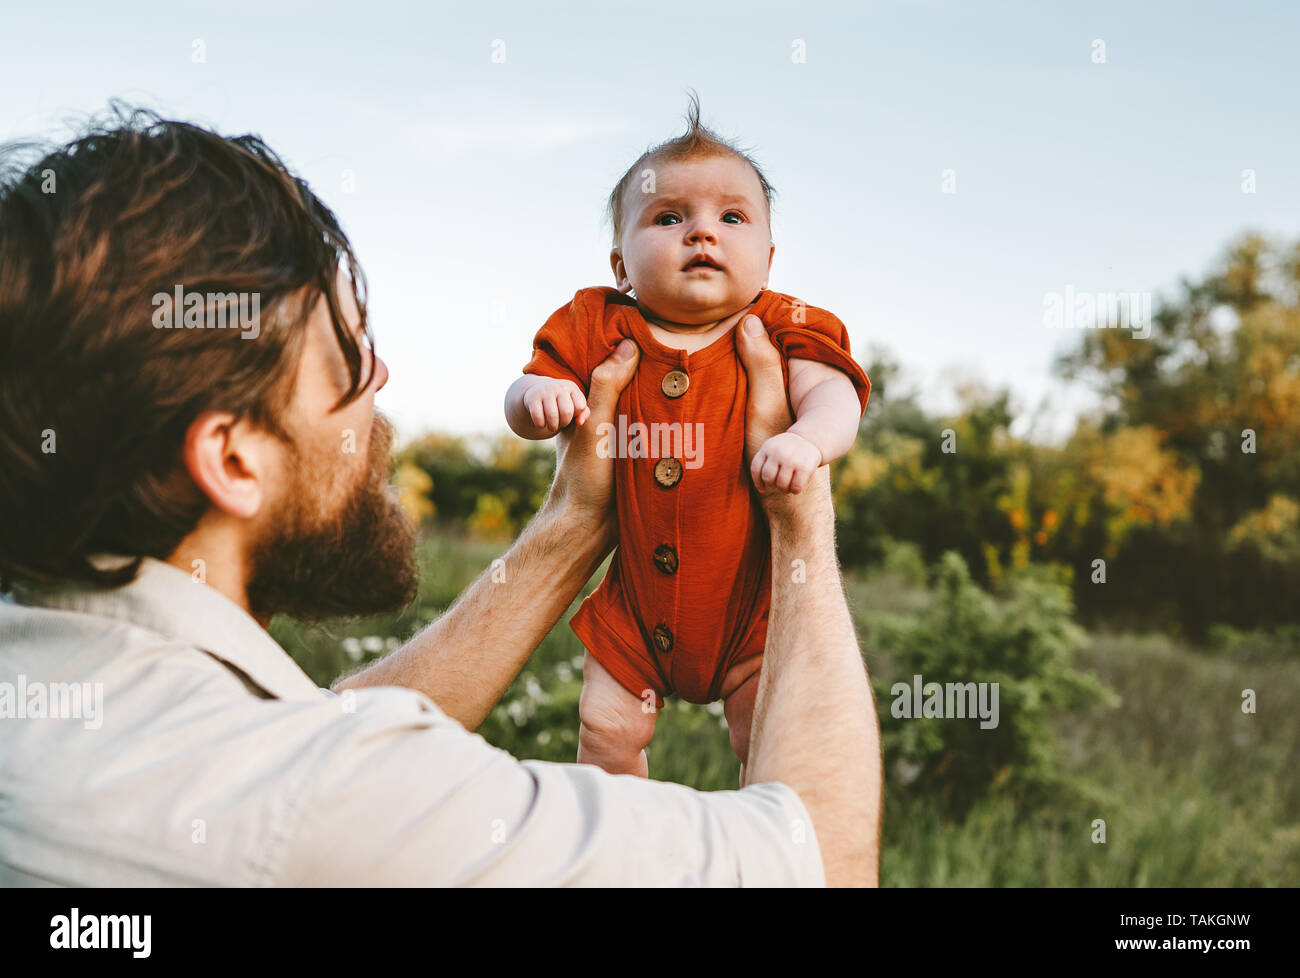 Vater Holding baby Tochter Familie lifestyle Papa und Kind reisen zusammen gehen Elternschaft Emotionen Konzept Väter lieben Tag Stockfoto